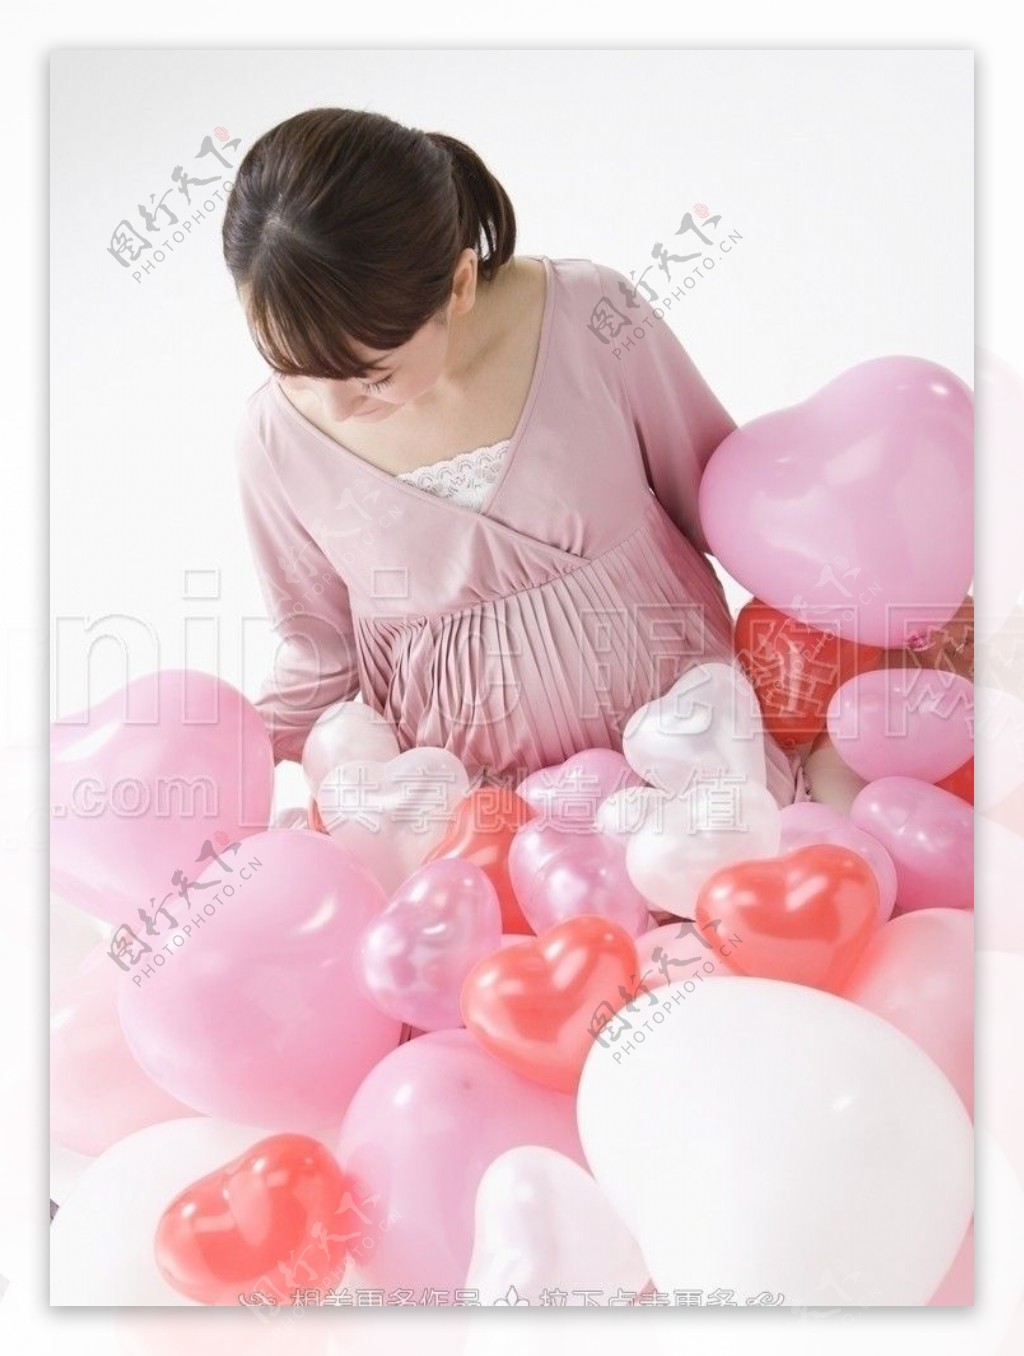 粉红气球图片